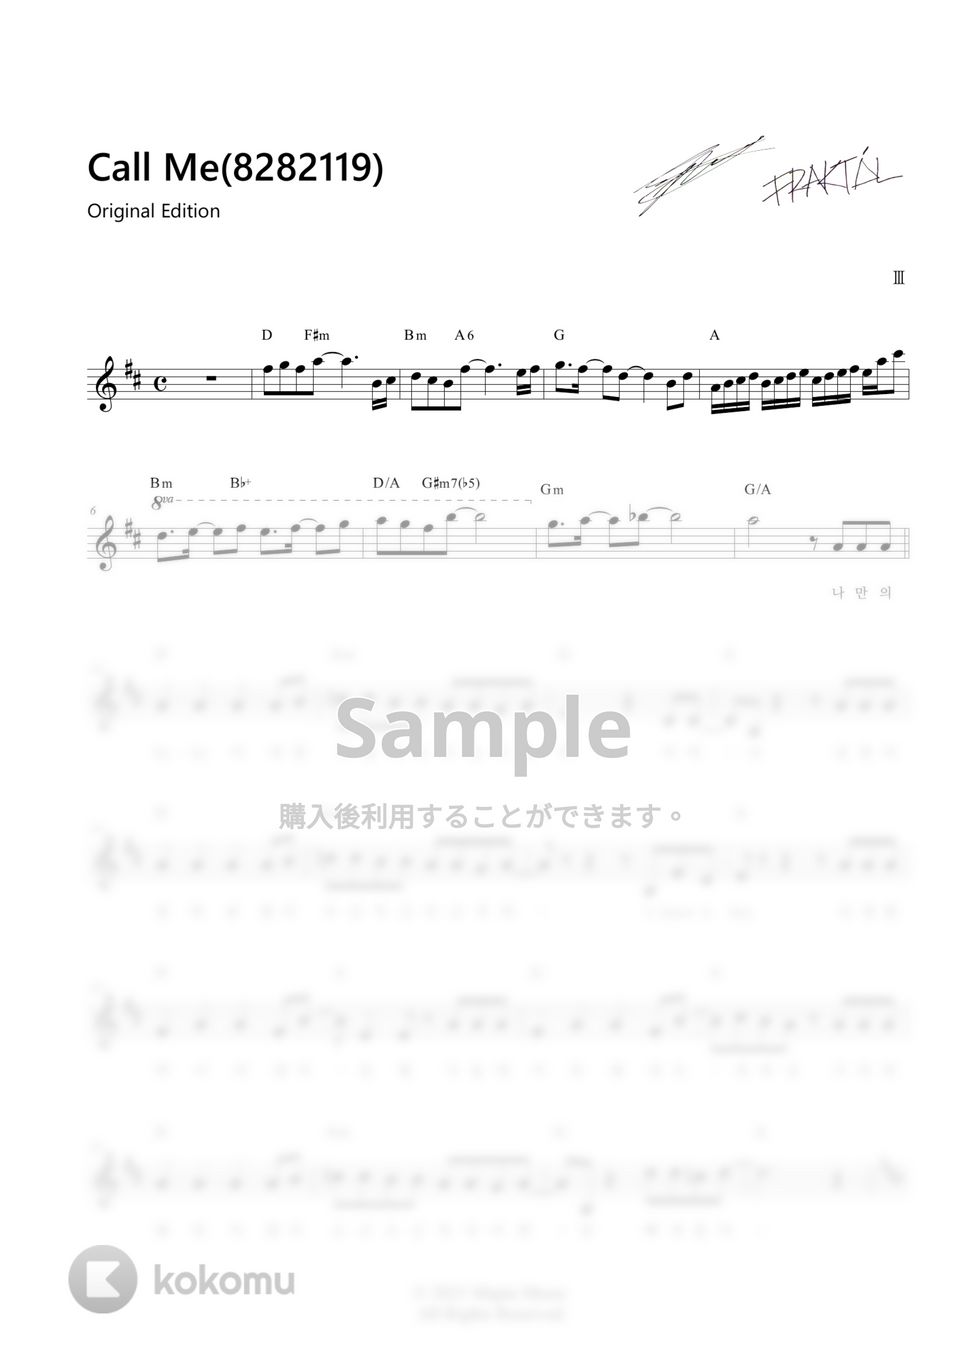 OMEGA Ⅲ - Call Me (8282119) [IMITATION X OMEGA Ⅲ] Original Edition (Code) by KOKOMU Original